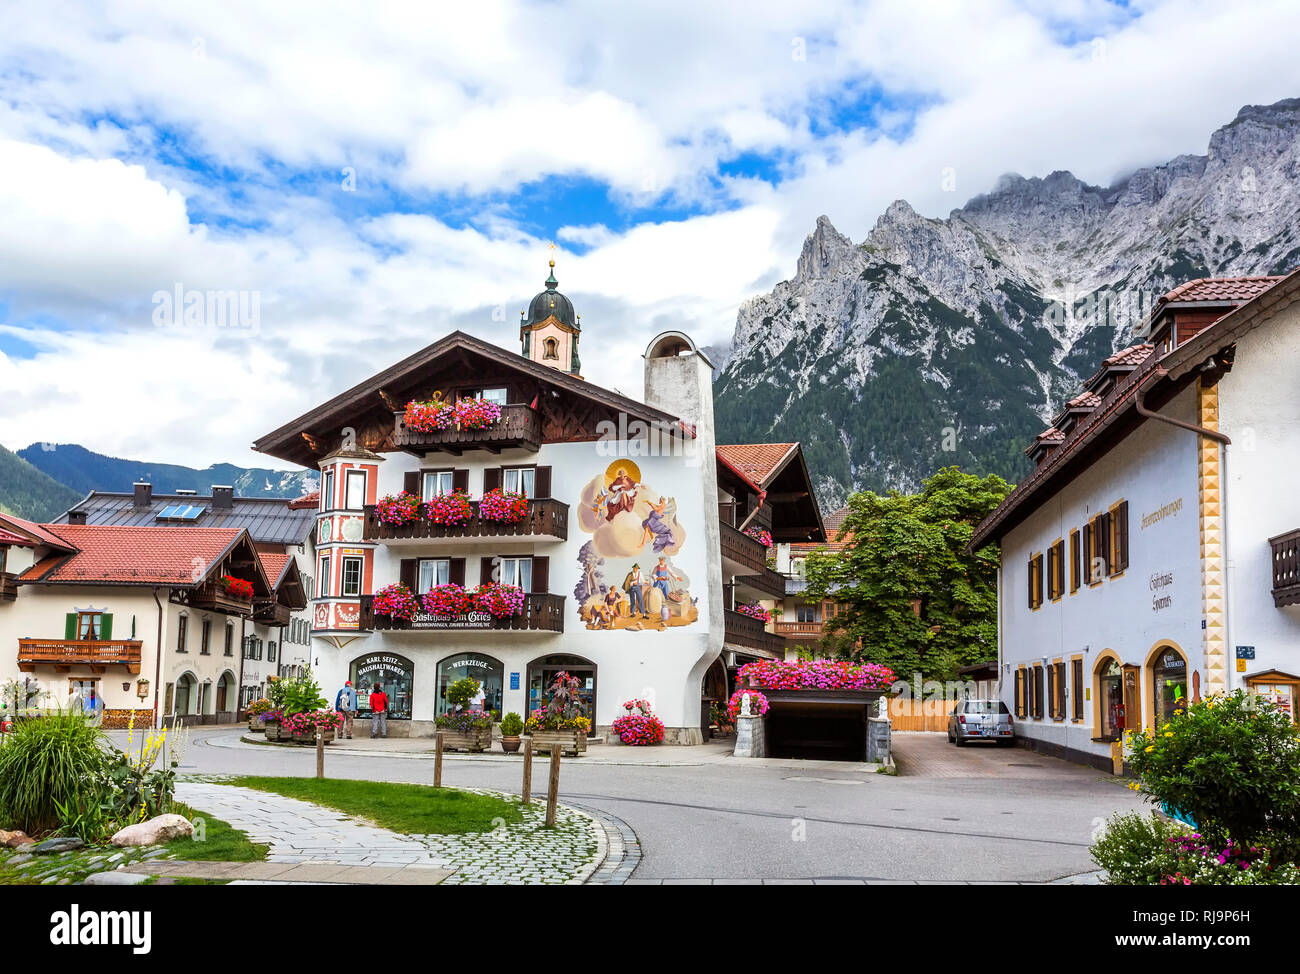 Hausfassaden mit Lüftlmalerei, hinten das Karwendel, Mittenwald, Werdenfelser Land, Oberbayern, Bayern, Deutschland, Europa Stock Photo